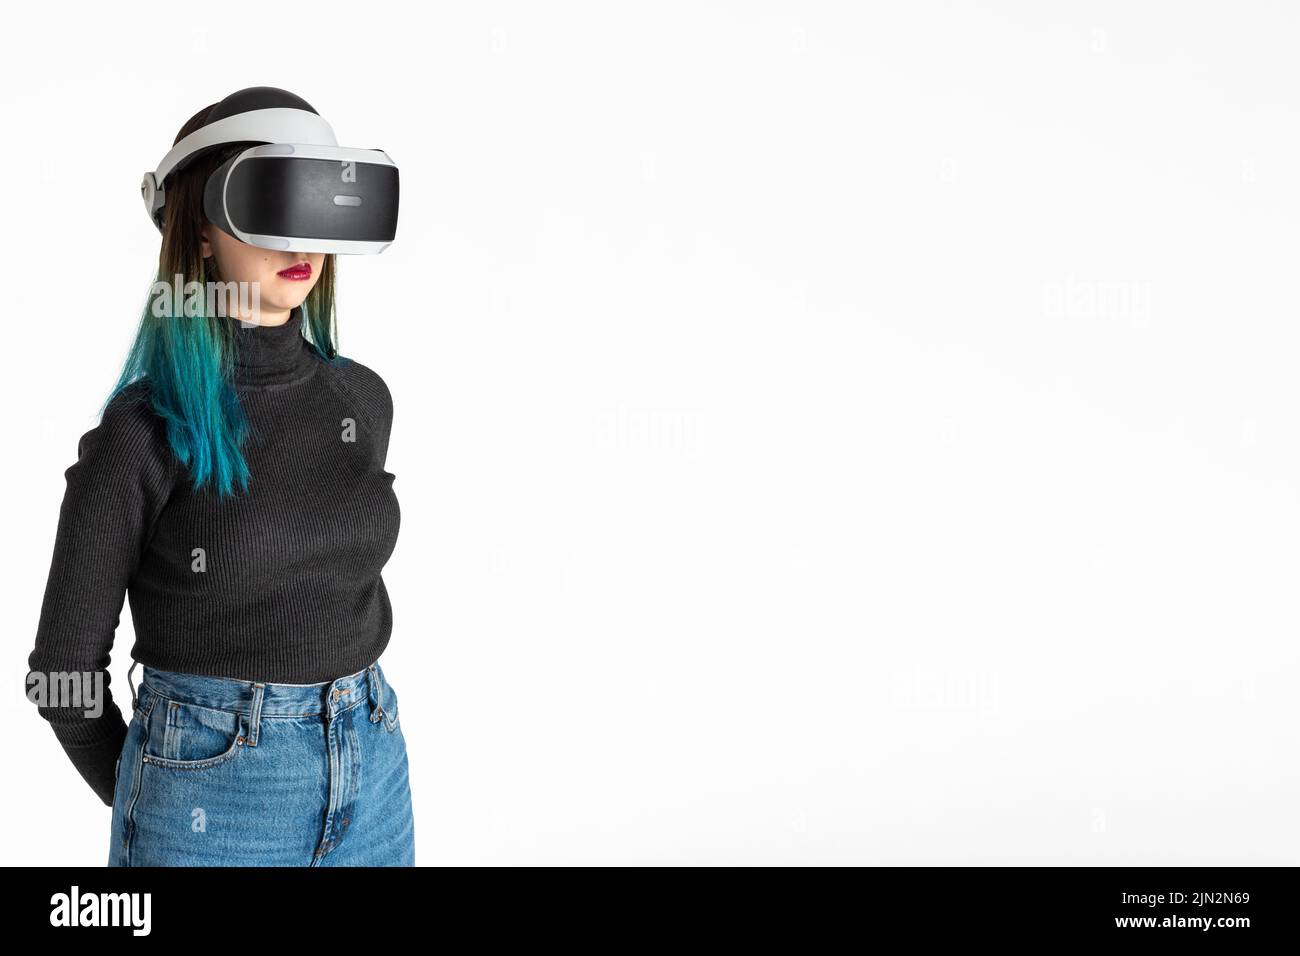 Una niña adolescente en un casco vr juega en el universo virtual aislado sobre un fondo blanco, marco vertical. El concepto del universo virtual. Vida Foto de stock